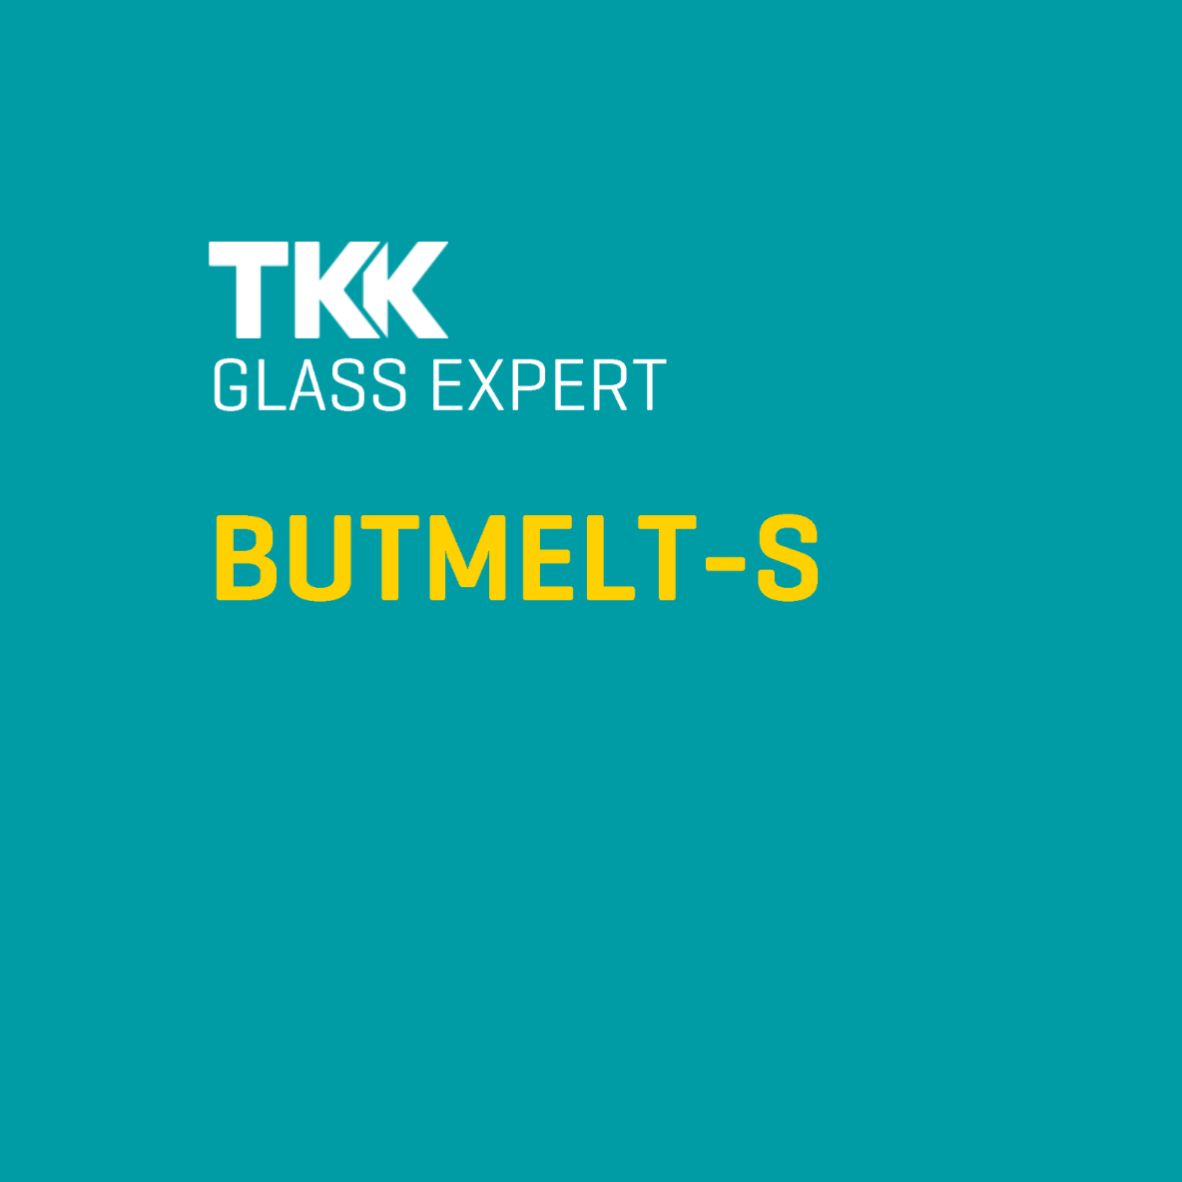 Glass Expert Butmelt S